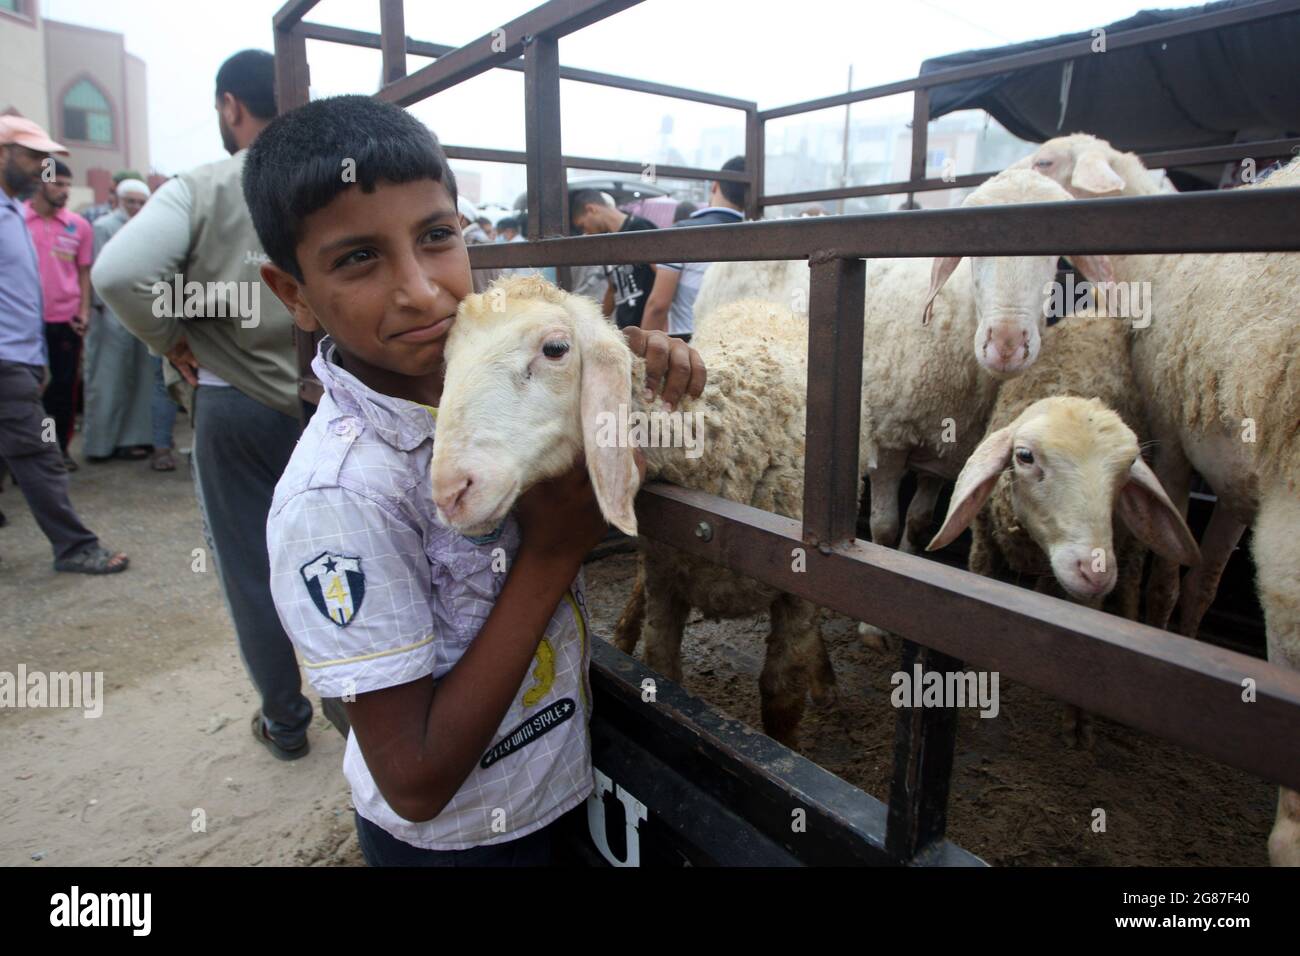 Rafah, Gaza. 17 luglio 2021. Un ragazzo palestinese gioca con animali sacrificali in un mercato del bestiame davanti all'Eid al-Adha, a Rafah nella striscia di Gaza meridionale, sabato 17 luglio 2021. I musulmani di tutto il mondo celebrano Eid al-Adha visitando le tombe dei loro cari e macellando pecore, capre, mucche e cammelli, in commemorazione della disponibilità del profeta Abramo a sacrificare suo figlio Ismail su comando di Dio. Foto di Ismael Mohamad/UPI Credit: UPI/Alamy Live News Foto Stock